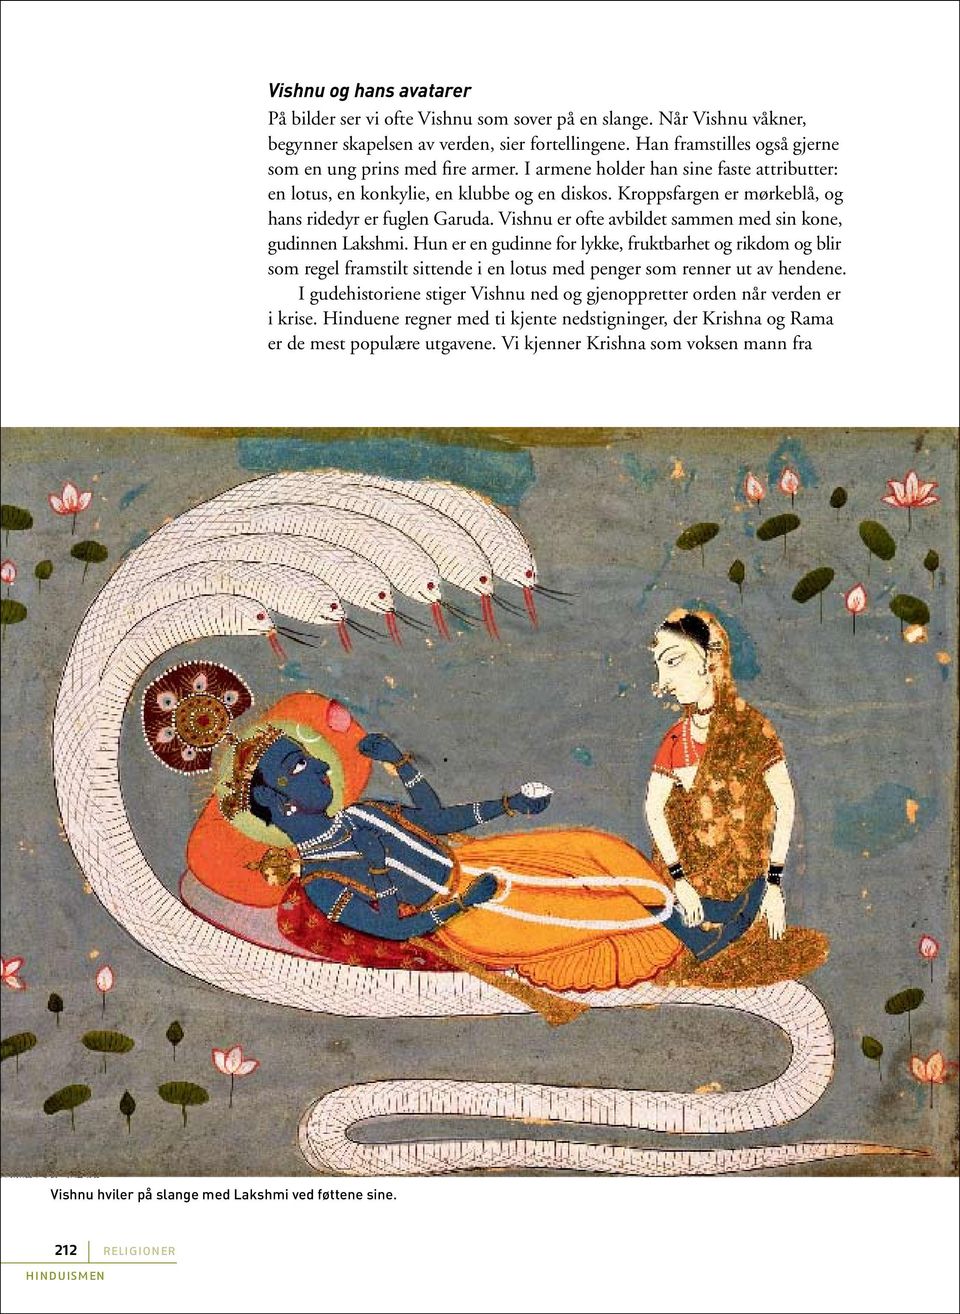 Kroppsfargen er mørkeblå, og hans ridedyr er fuglen Garuda. Vishnu er ofte avbildet sammen med sin kone, gudinnen Lakshmi.